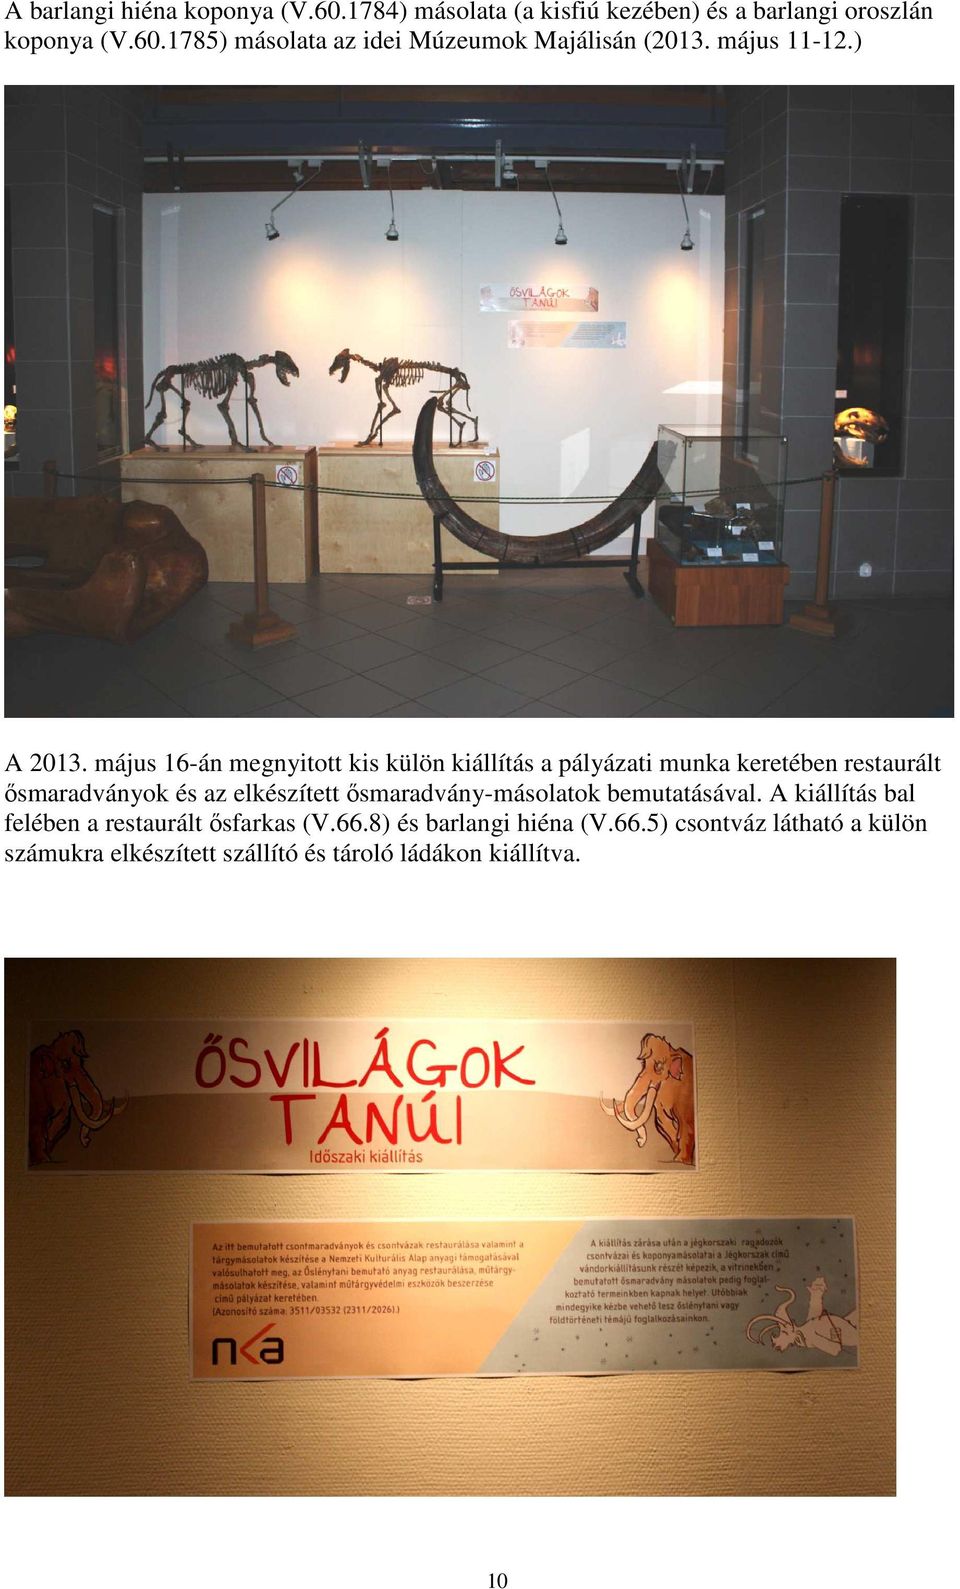 május 16-án megnyitott kis külön kiállítás a pályázati munka keretében restaurált ősmaradványok és az elkészített